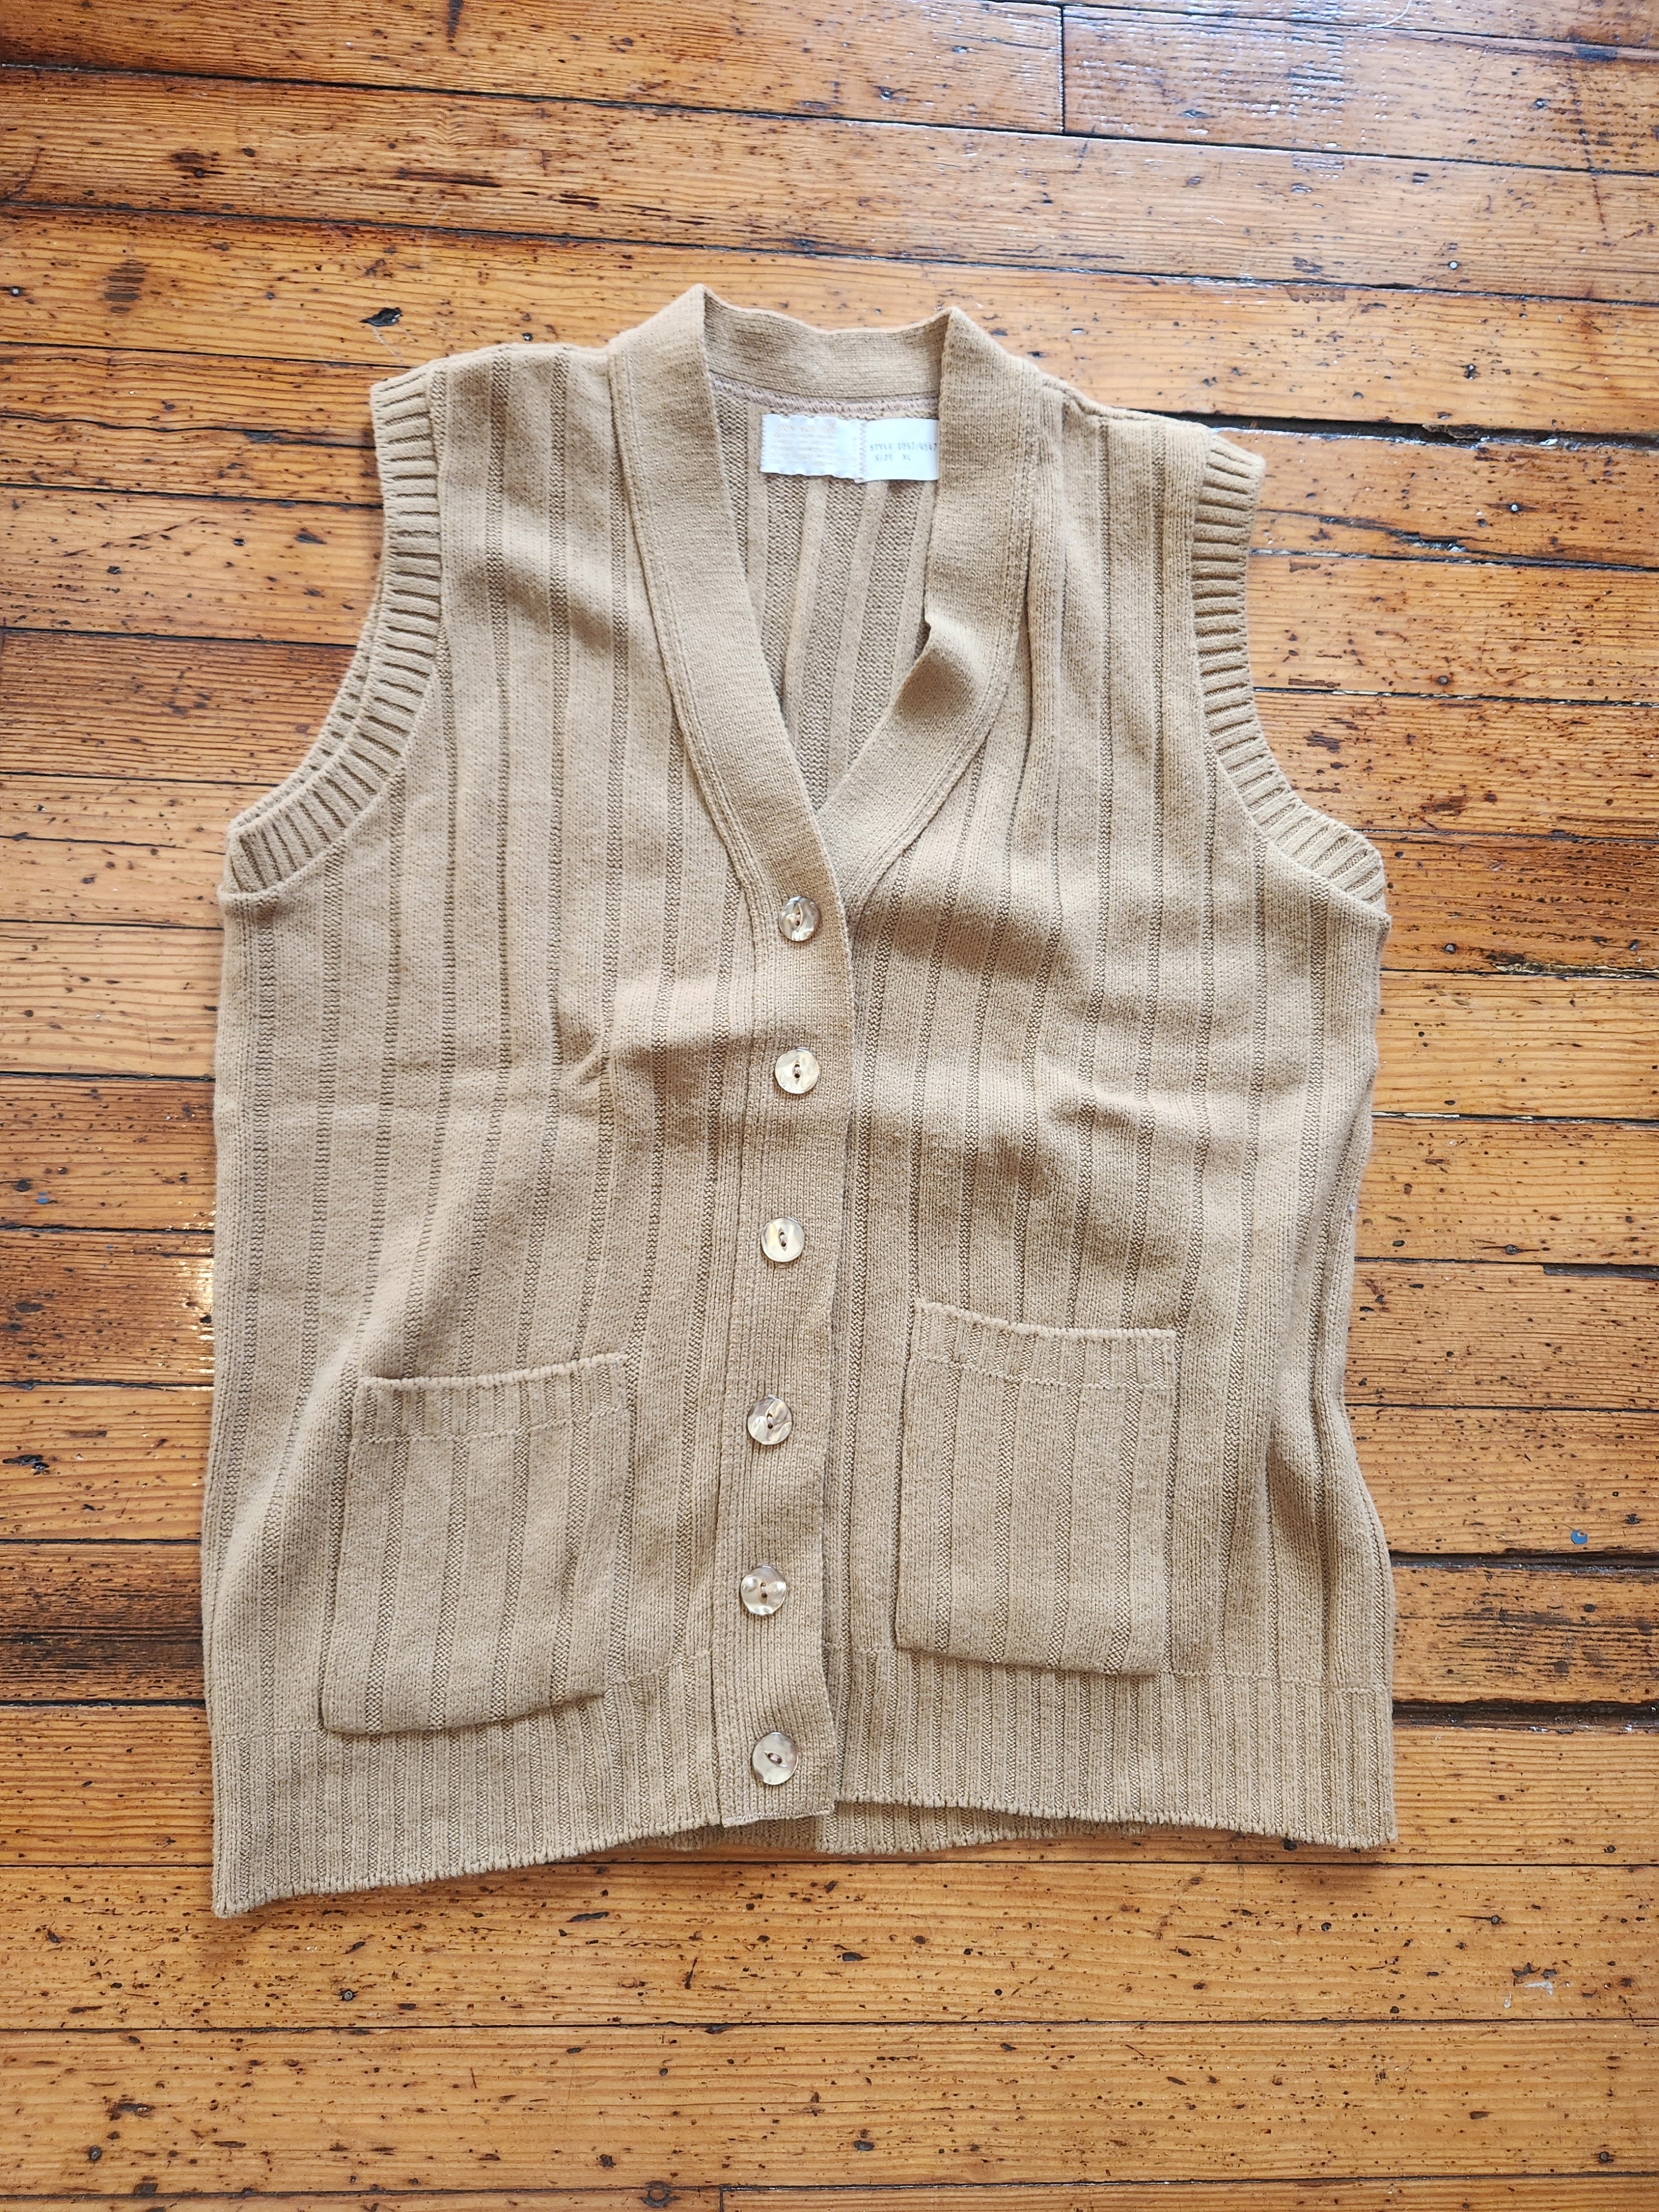 Melville Knitwear Co Sweater Vest